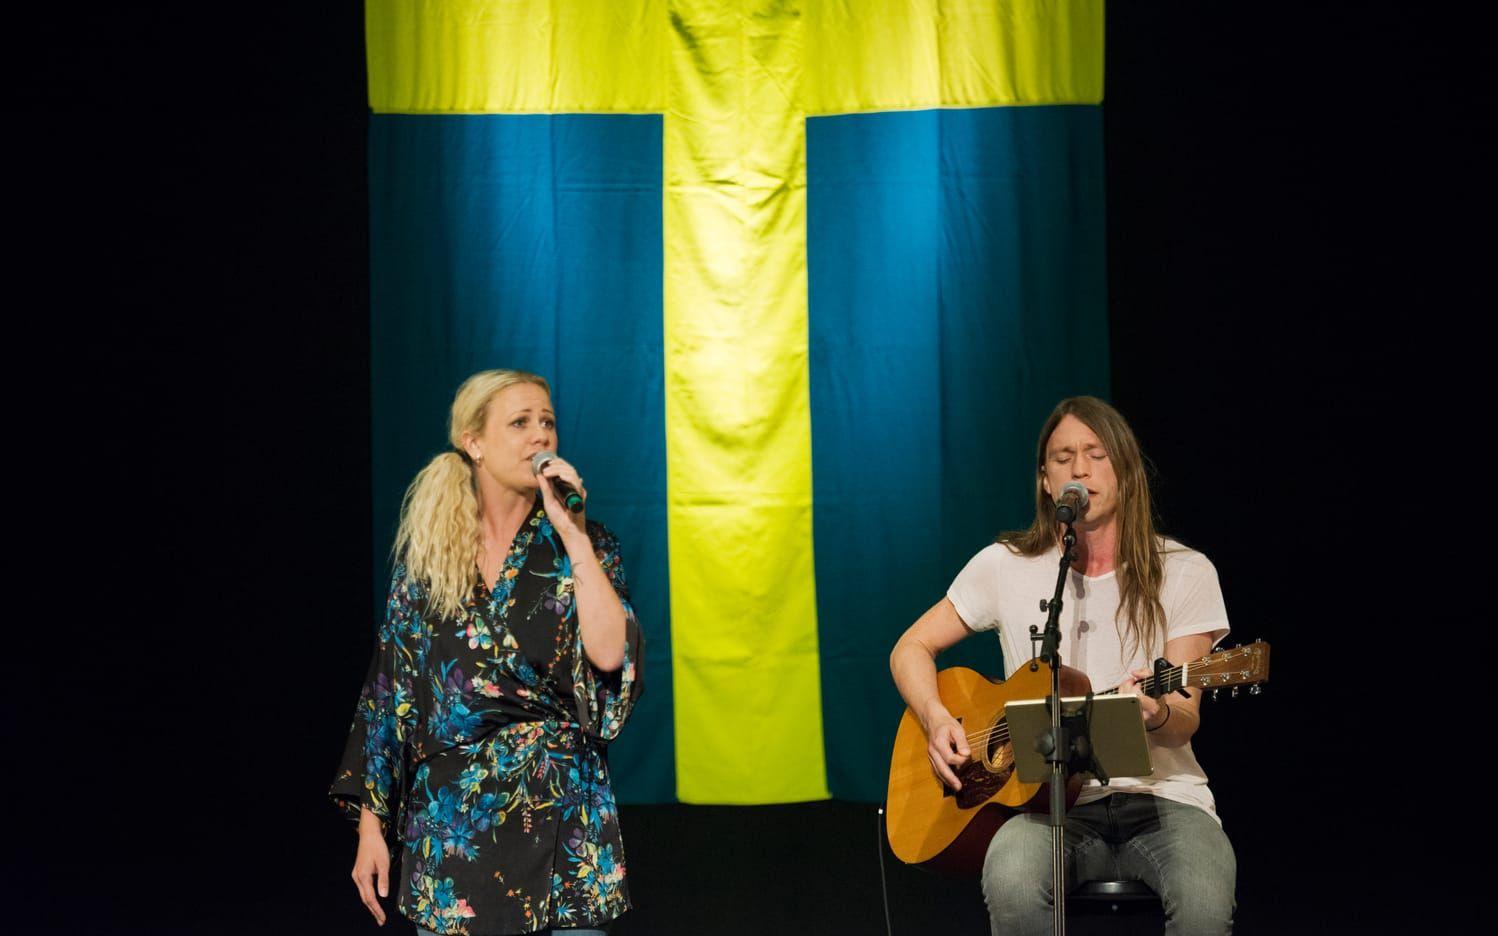 Hannah Svensson framförde sin falkenbergshyllning "Staden vid havet" tillsammans med gitarrist Benjamin Önnhed. BILD: Jonatan Bylars